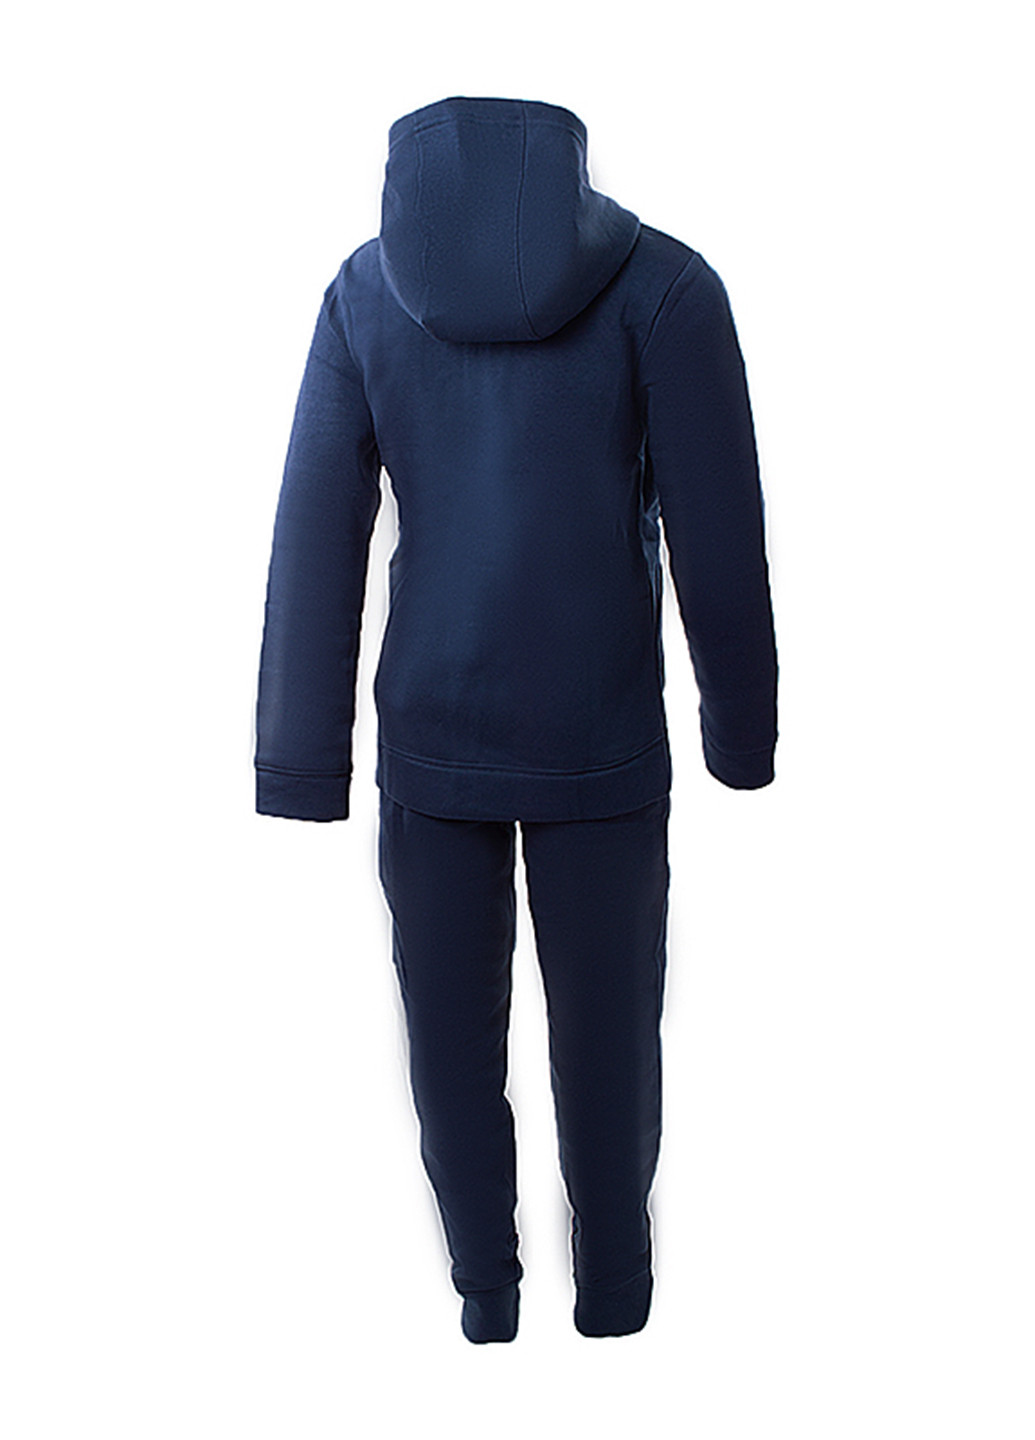 Темно-синий демисезонный костюм (толстовка, брюки) брючный Nike B NSW CORE BF TRK SUIT